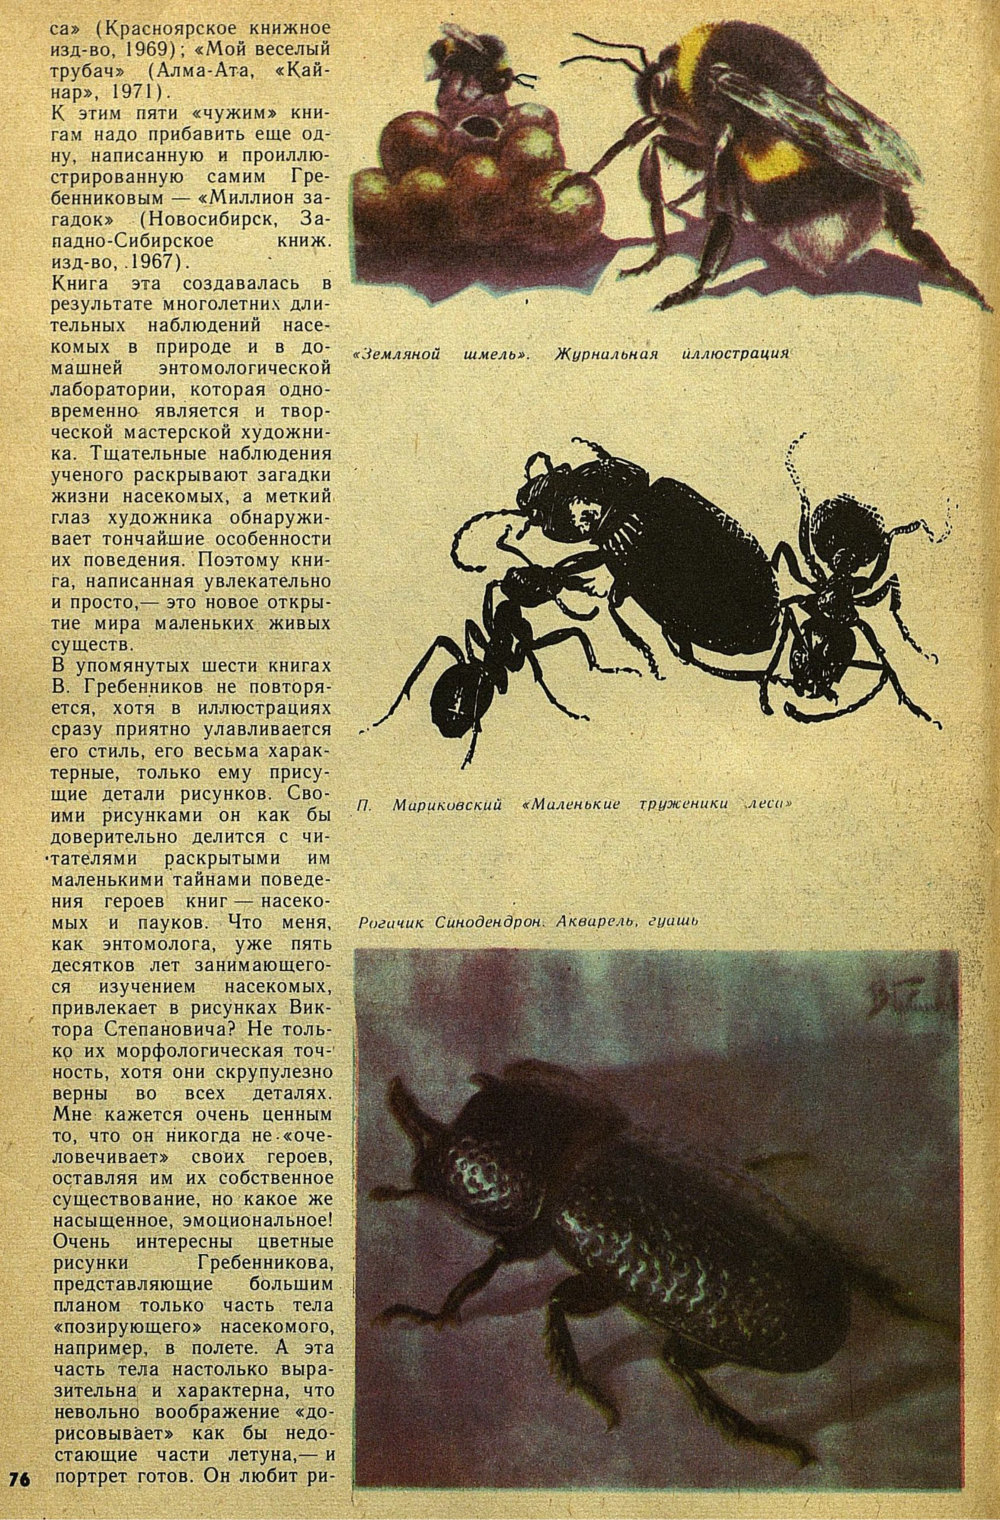 Дирижер энтомологического оркестра. Е. Бацылев. Детская литература, 1975, №9 (117), с.74-78. Фотокопия №3